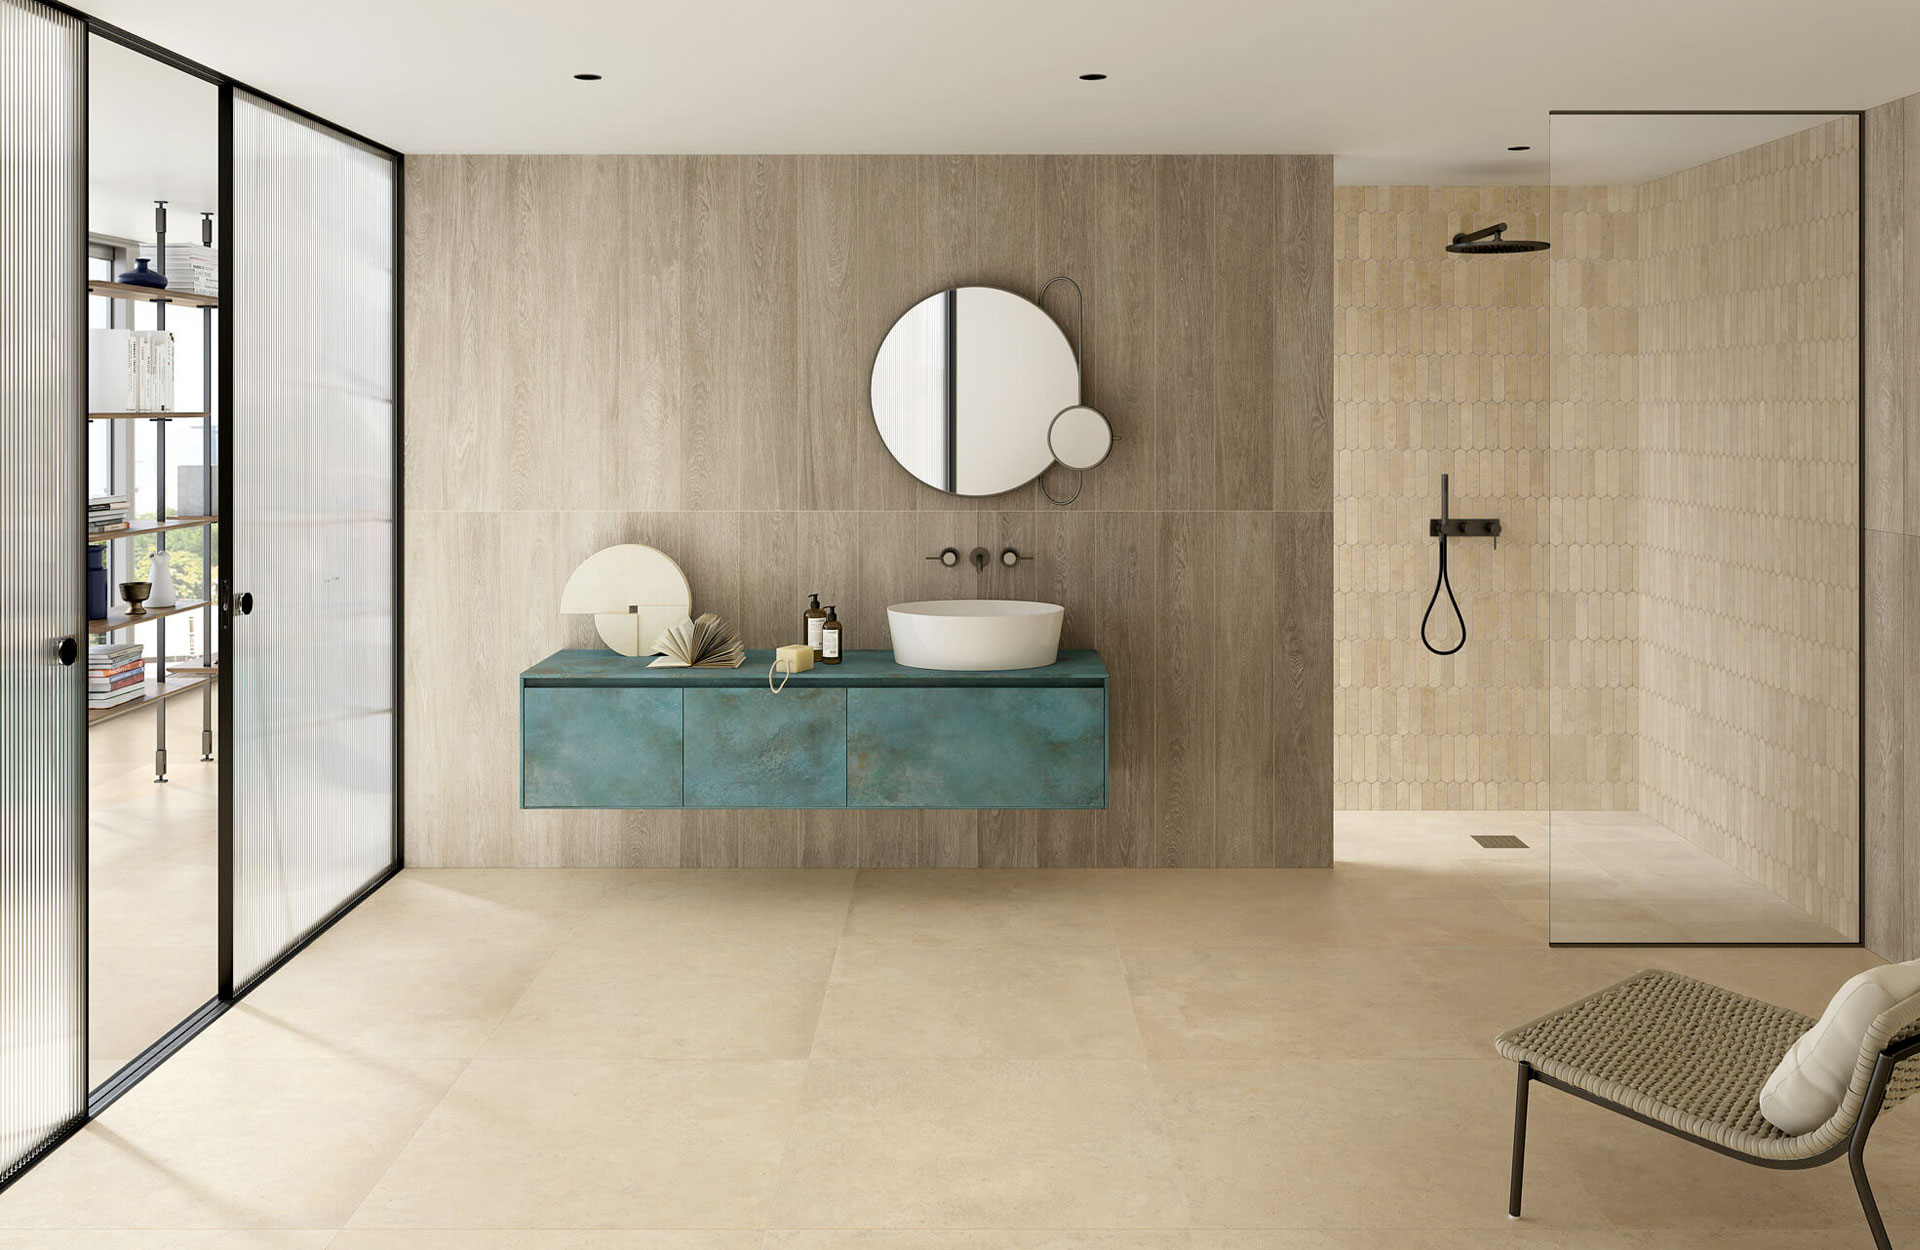 Materica range in ‘Corda’ (floor) and Alchemy in ‘Mint’ bathroom countertop.